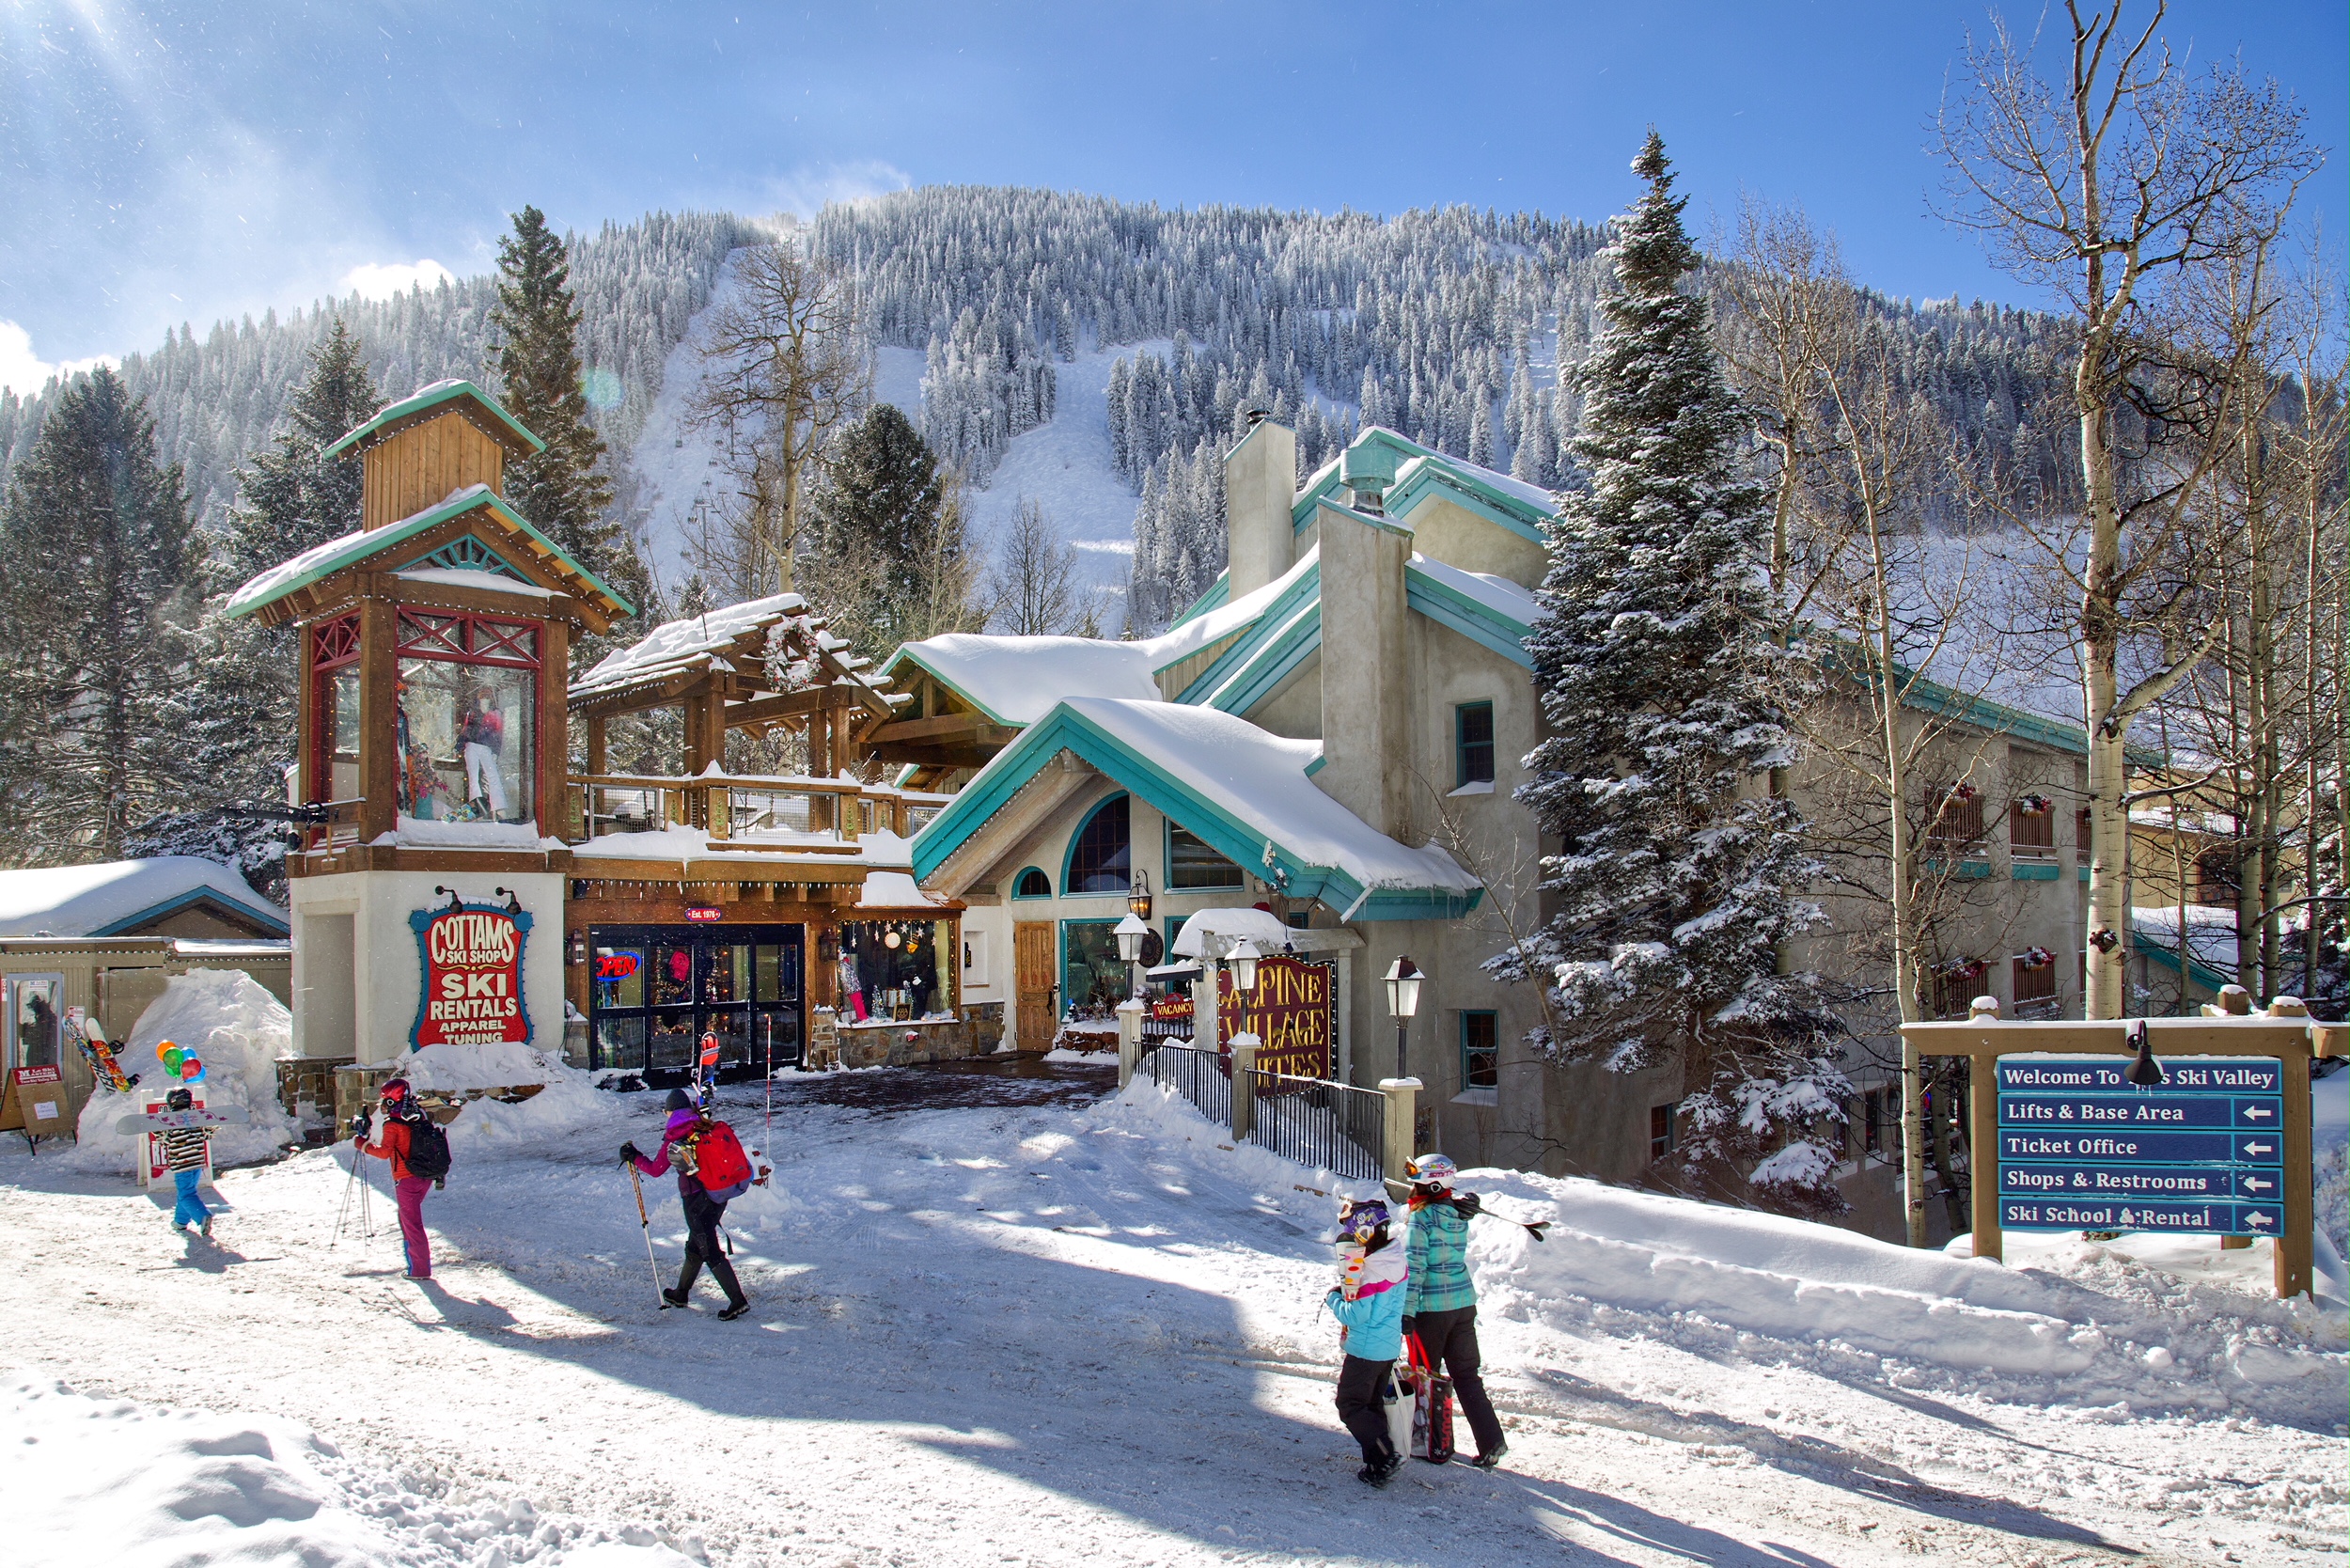 Door 2 Door Ski & Snowboard Rental Delivery in USA, North America | Snowboarding,Skiing - Rated 3.7